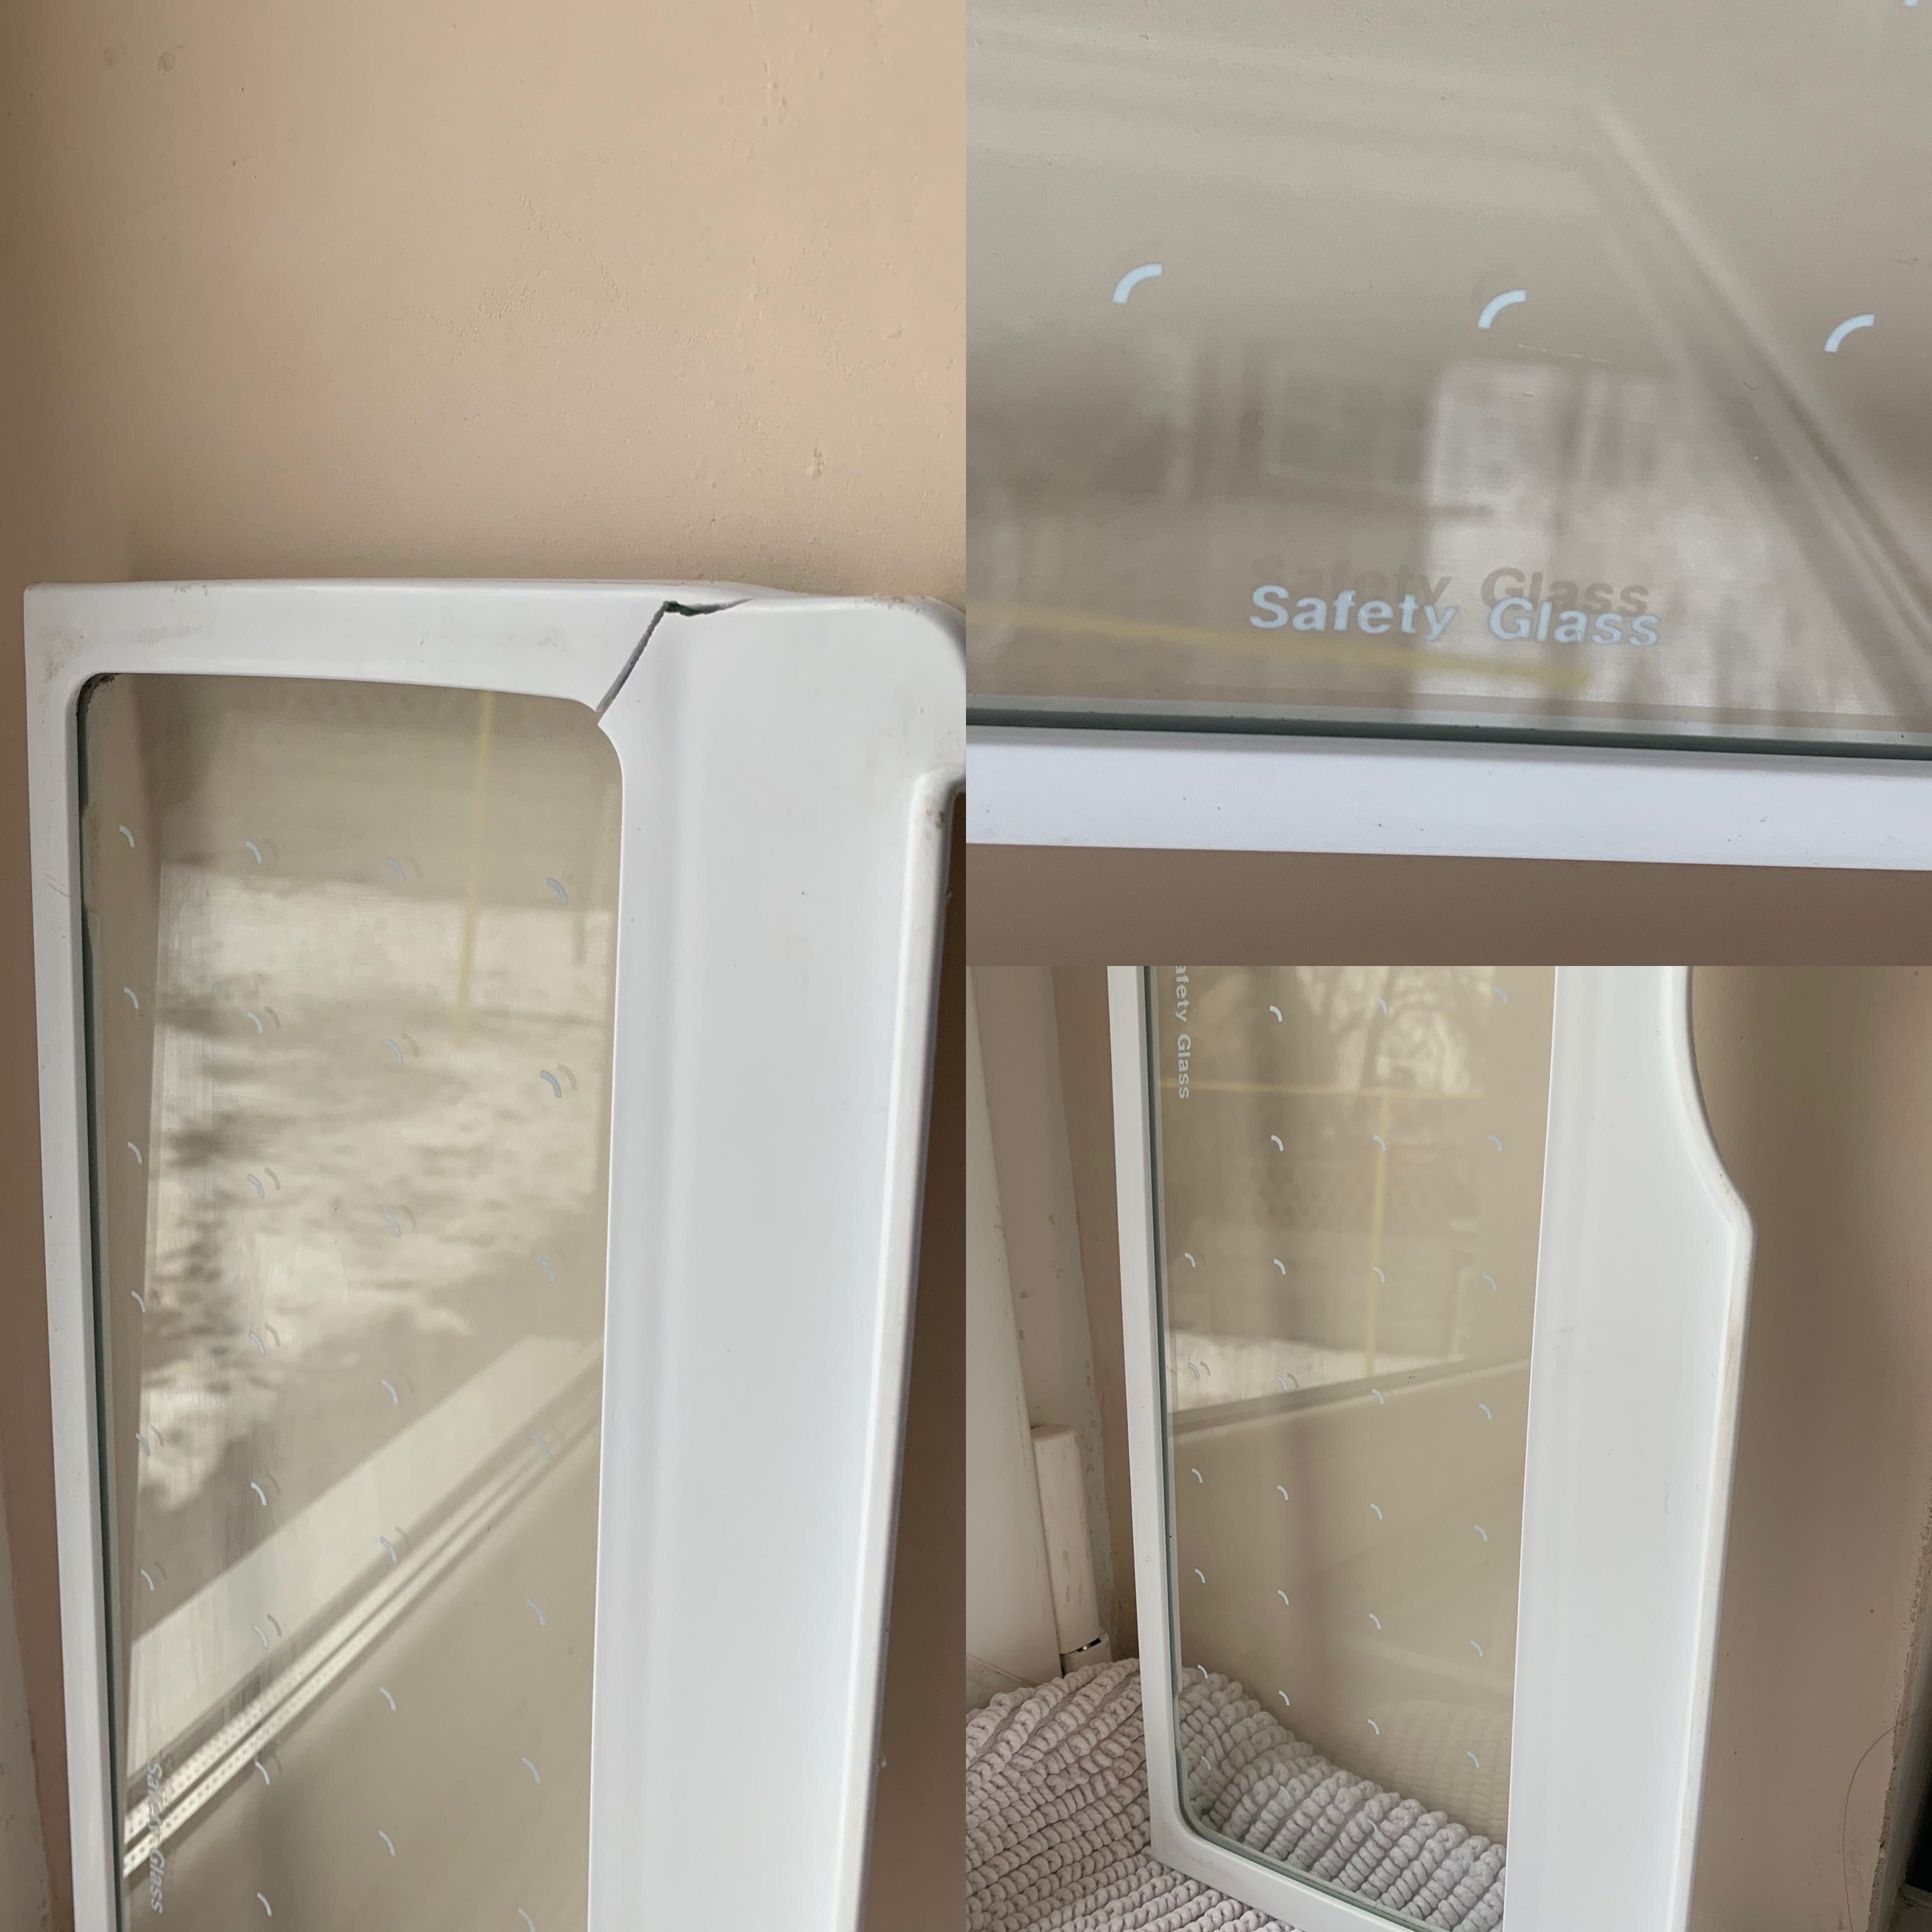 Полка для холодильника Samsung Safety glass